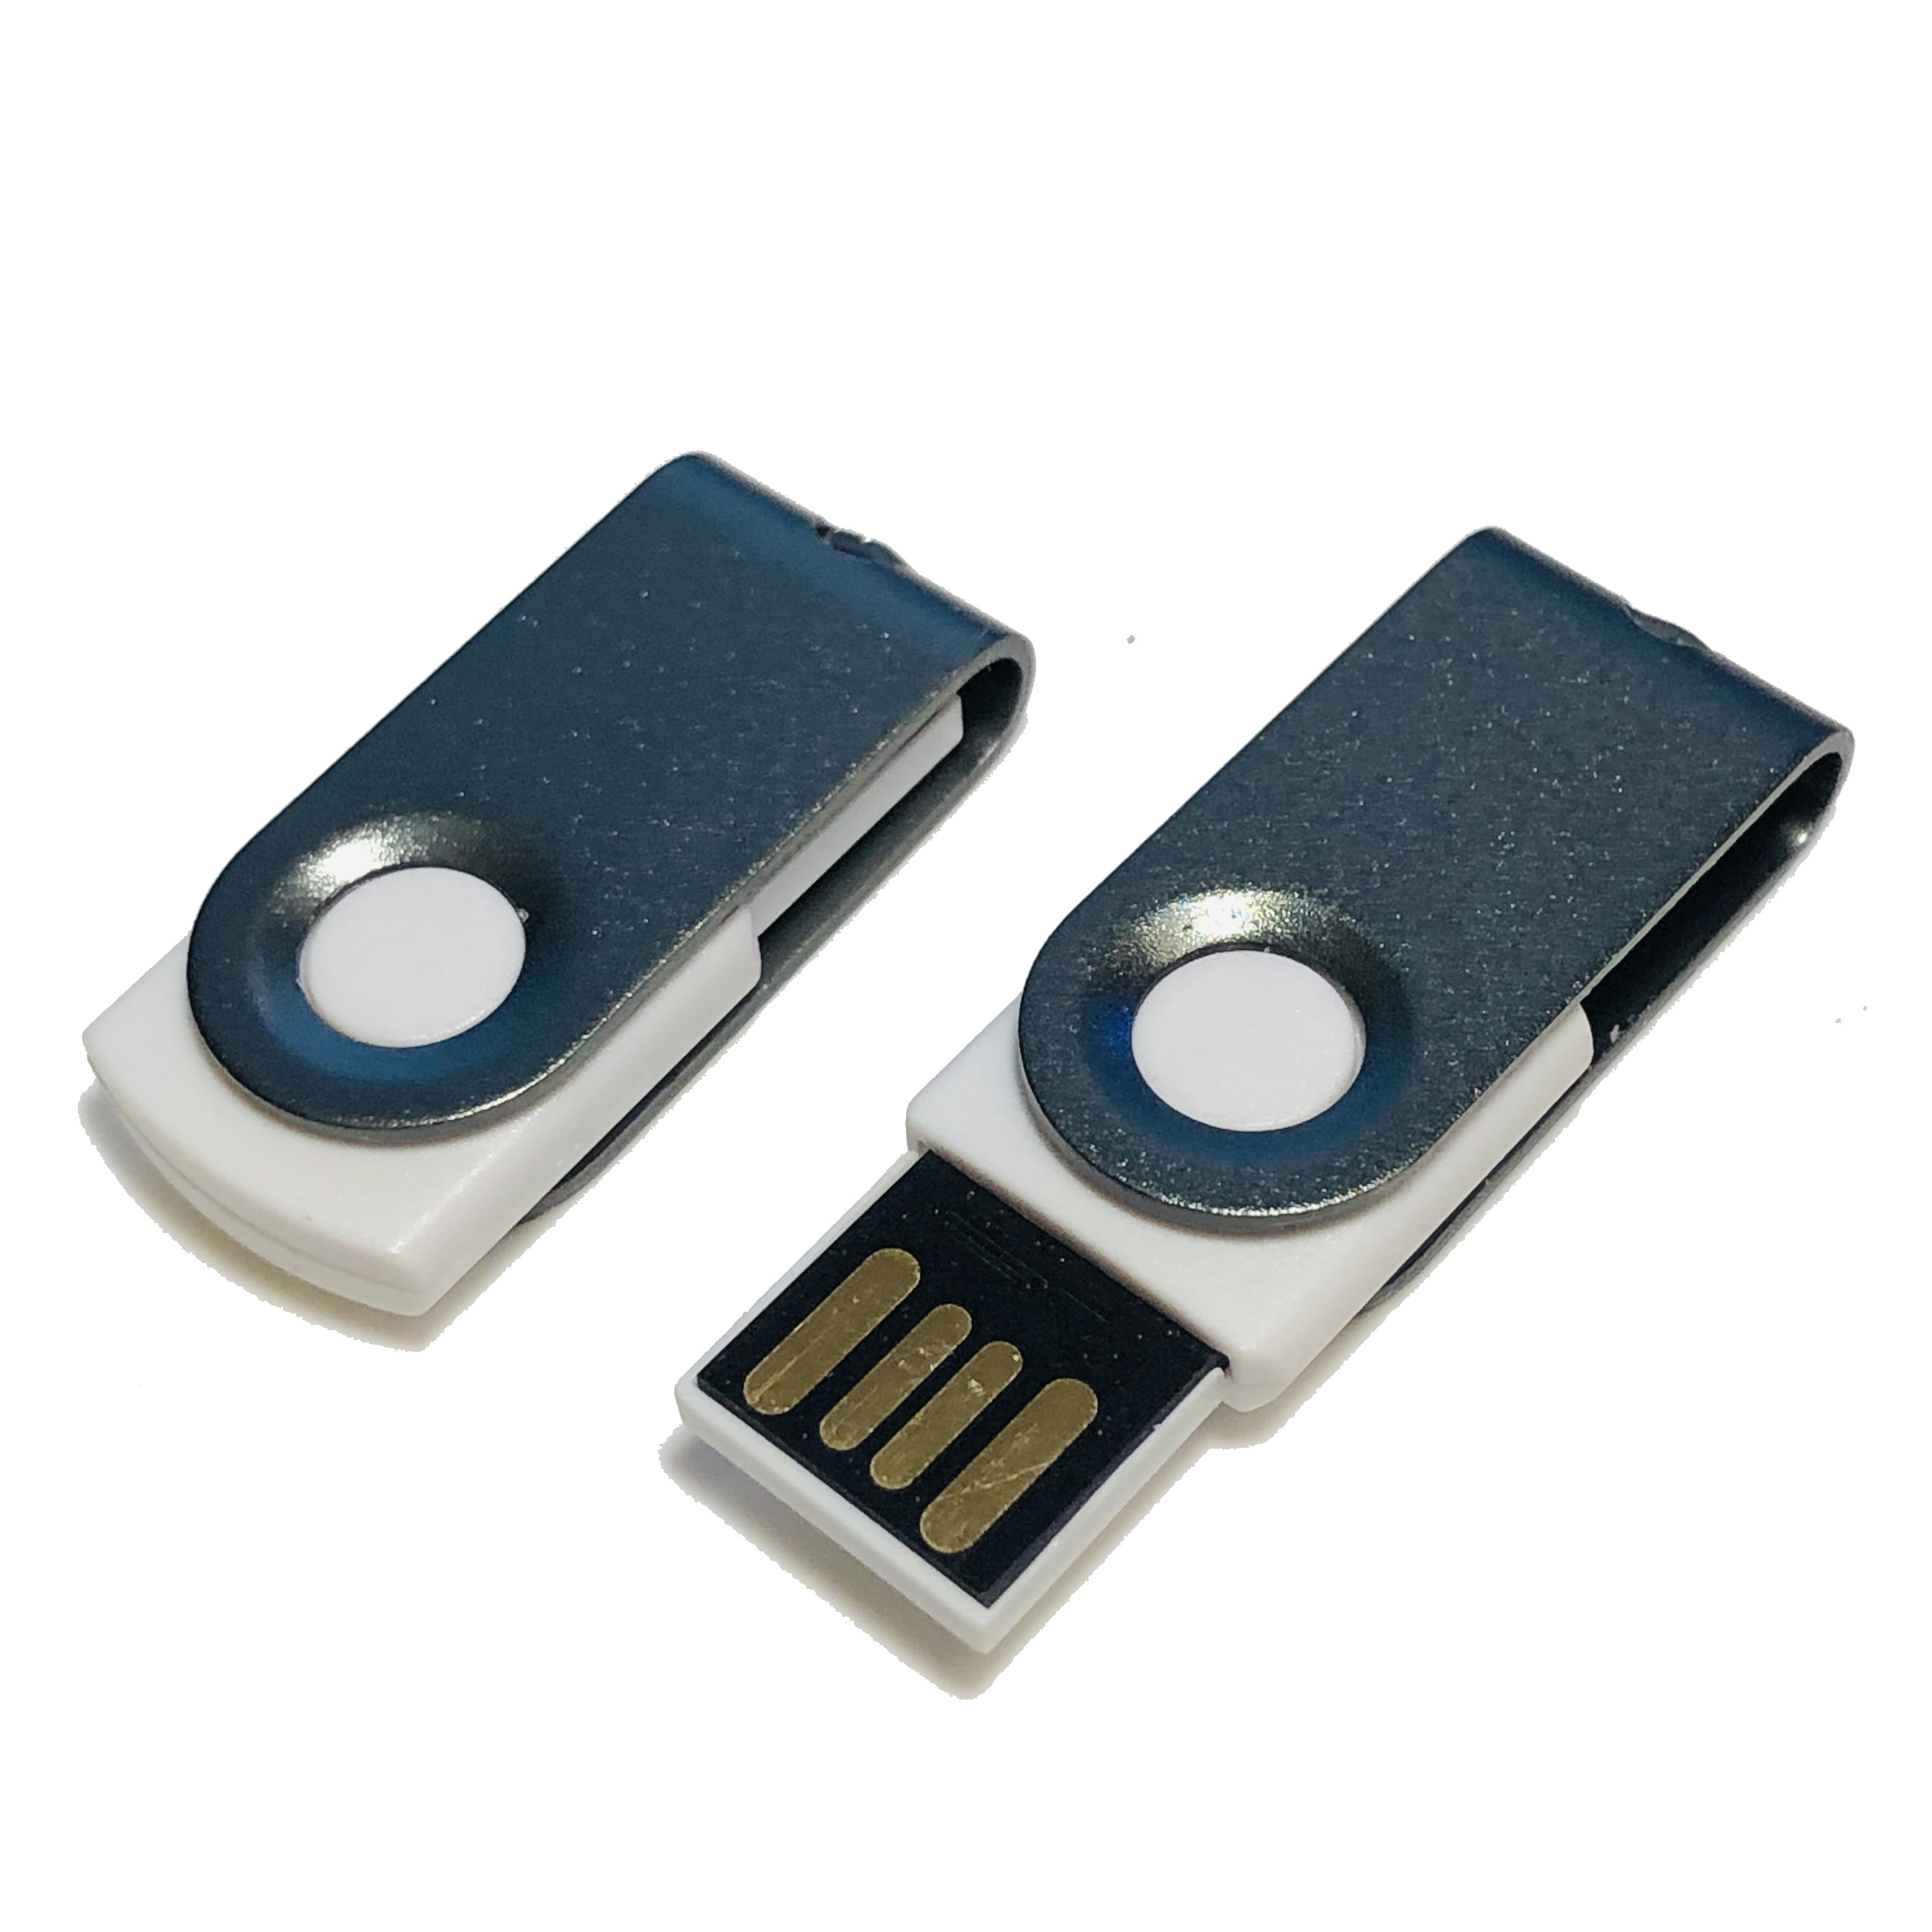 GB) USB MINI-SWIVEL ® USB-Stick GERMANY (Weiß-Graumetall, 2